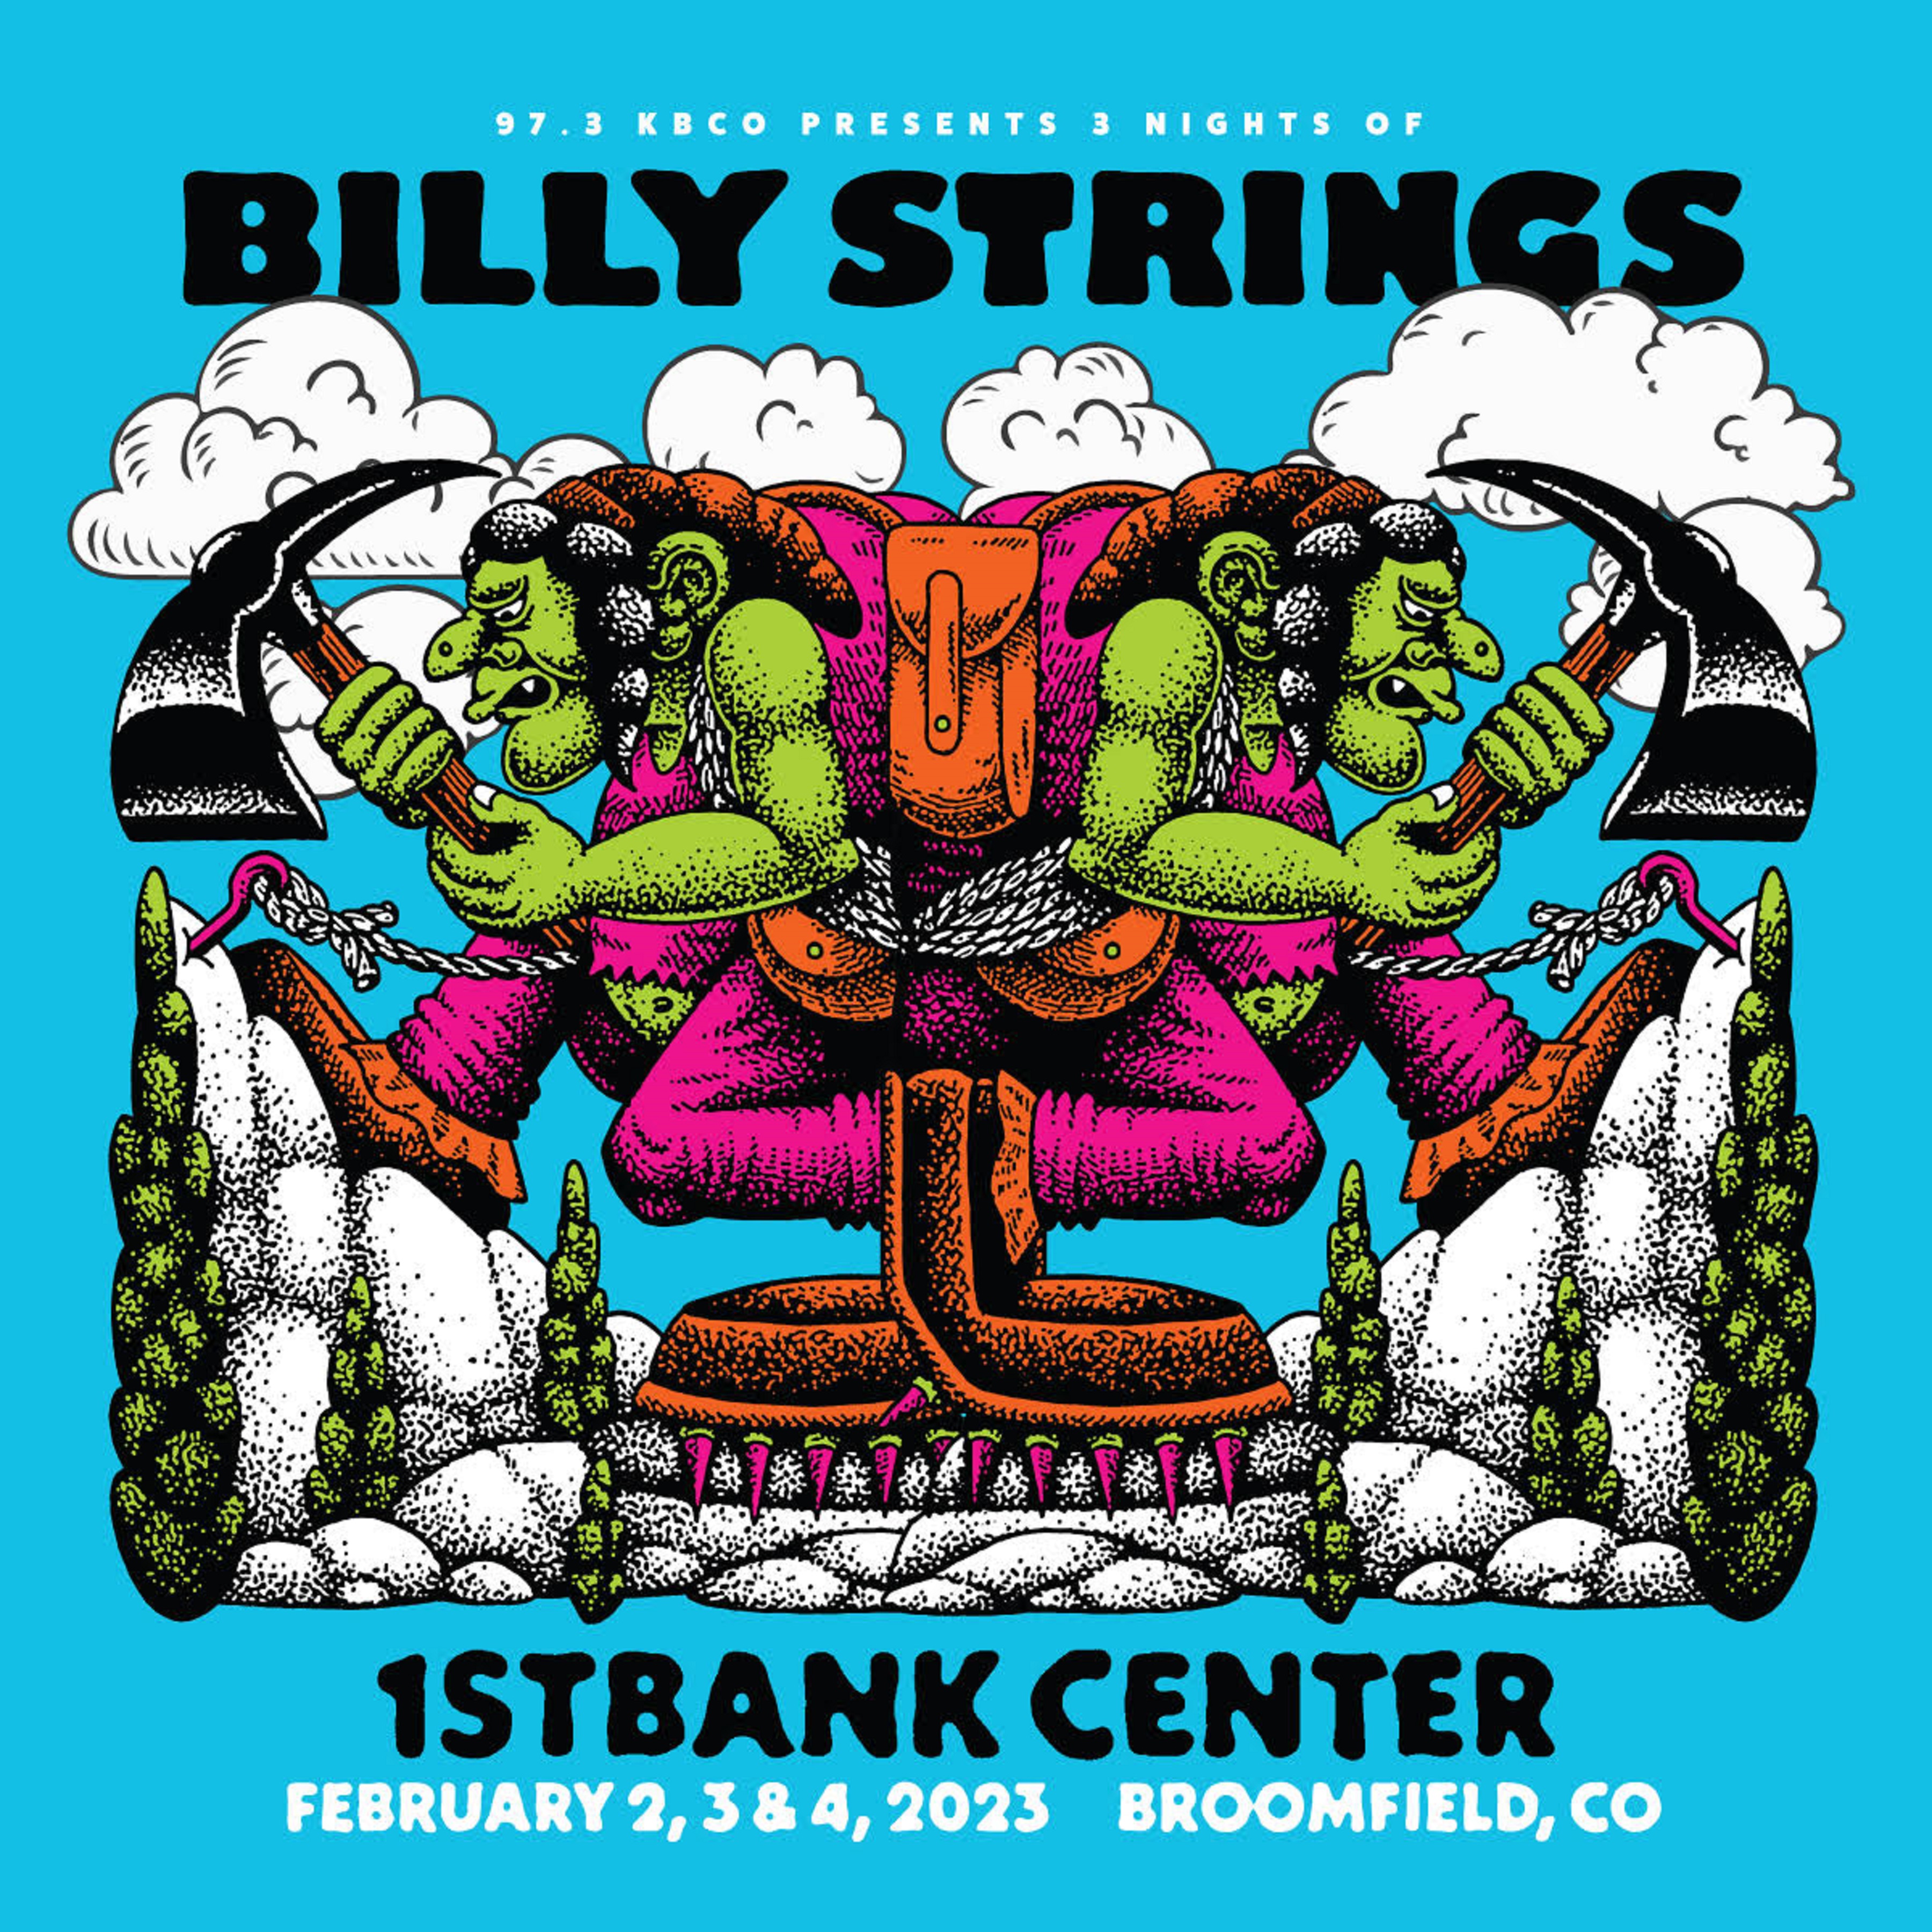 BILLY STRINGS | 1st Bank Center | Feb 2-4, 2023